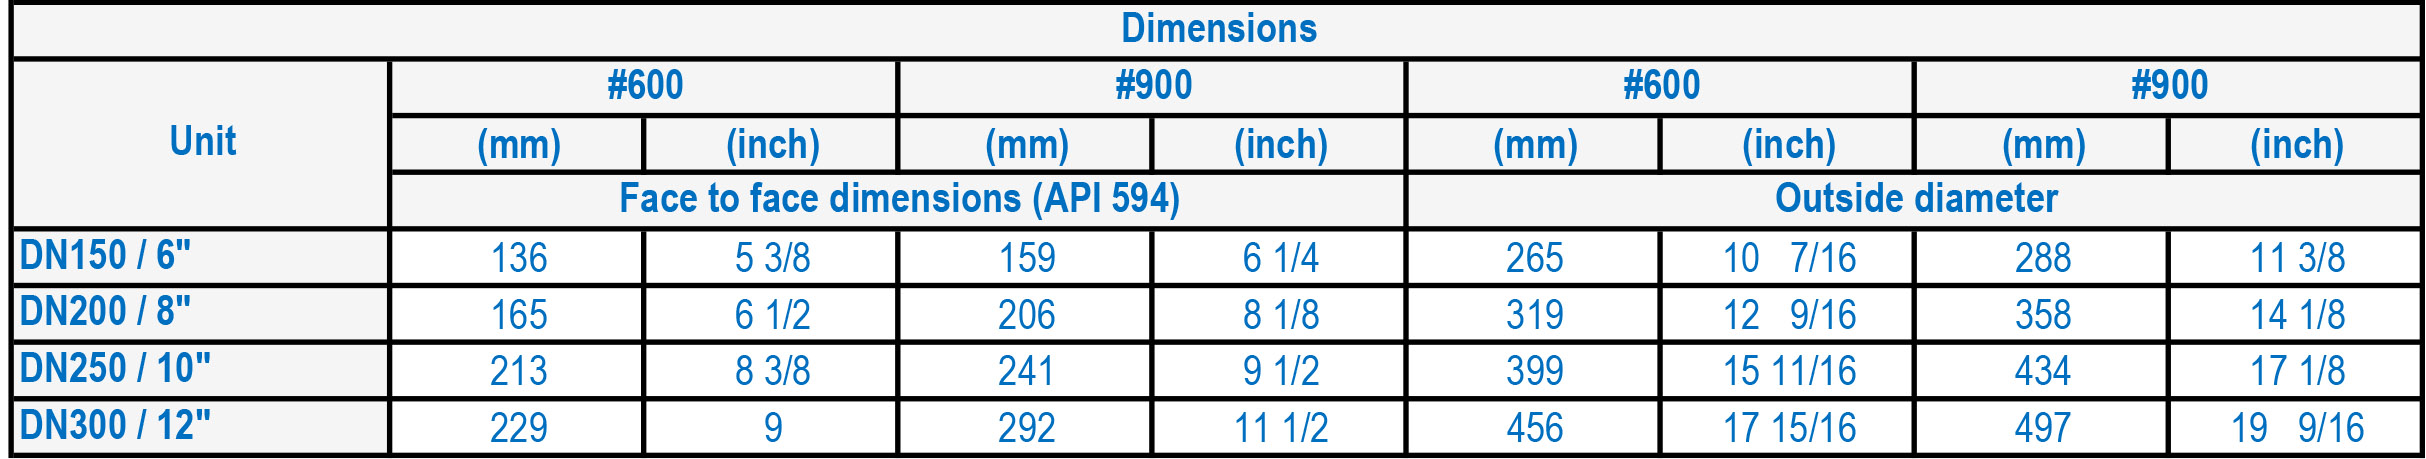 HMP 6A Range Surge Reduction Check Valves DIMENSIONS